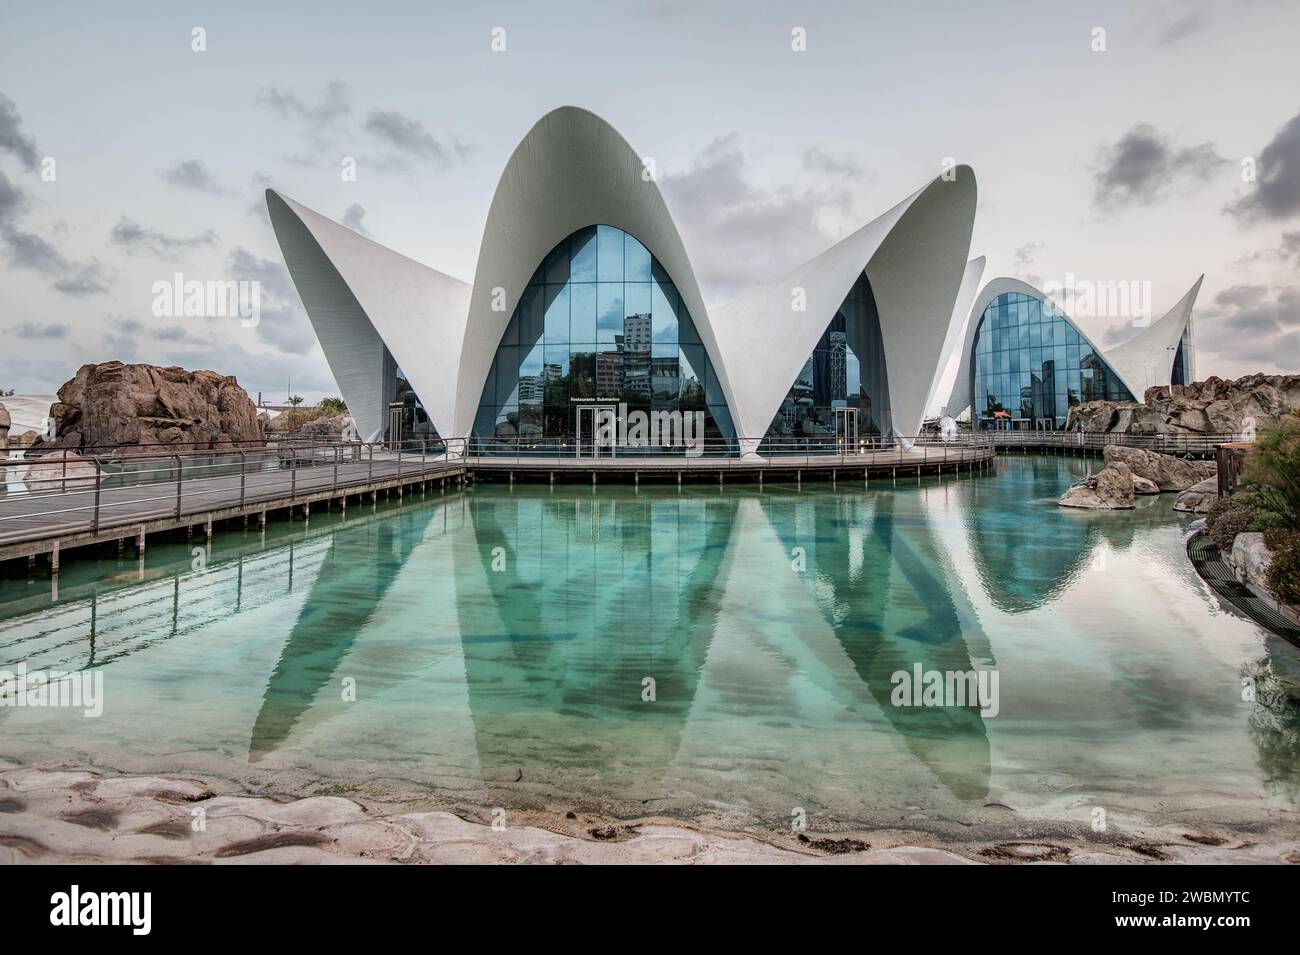 Il moderno ristorante Submarino all'interno del Museo Oceanografico con la sua architettura riflessa nell'acqua, Valencia, Spagna Foto Stock